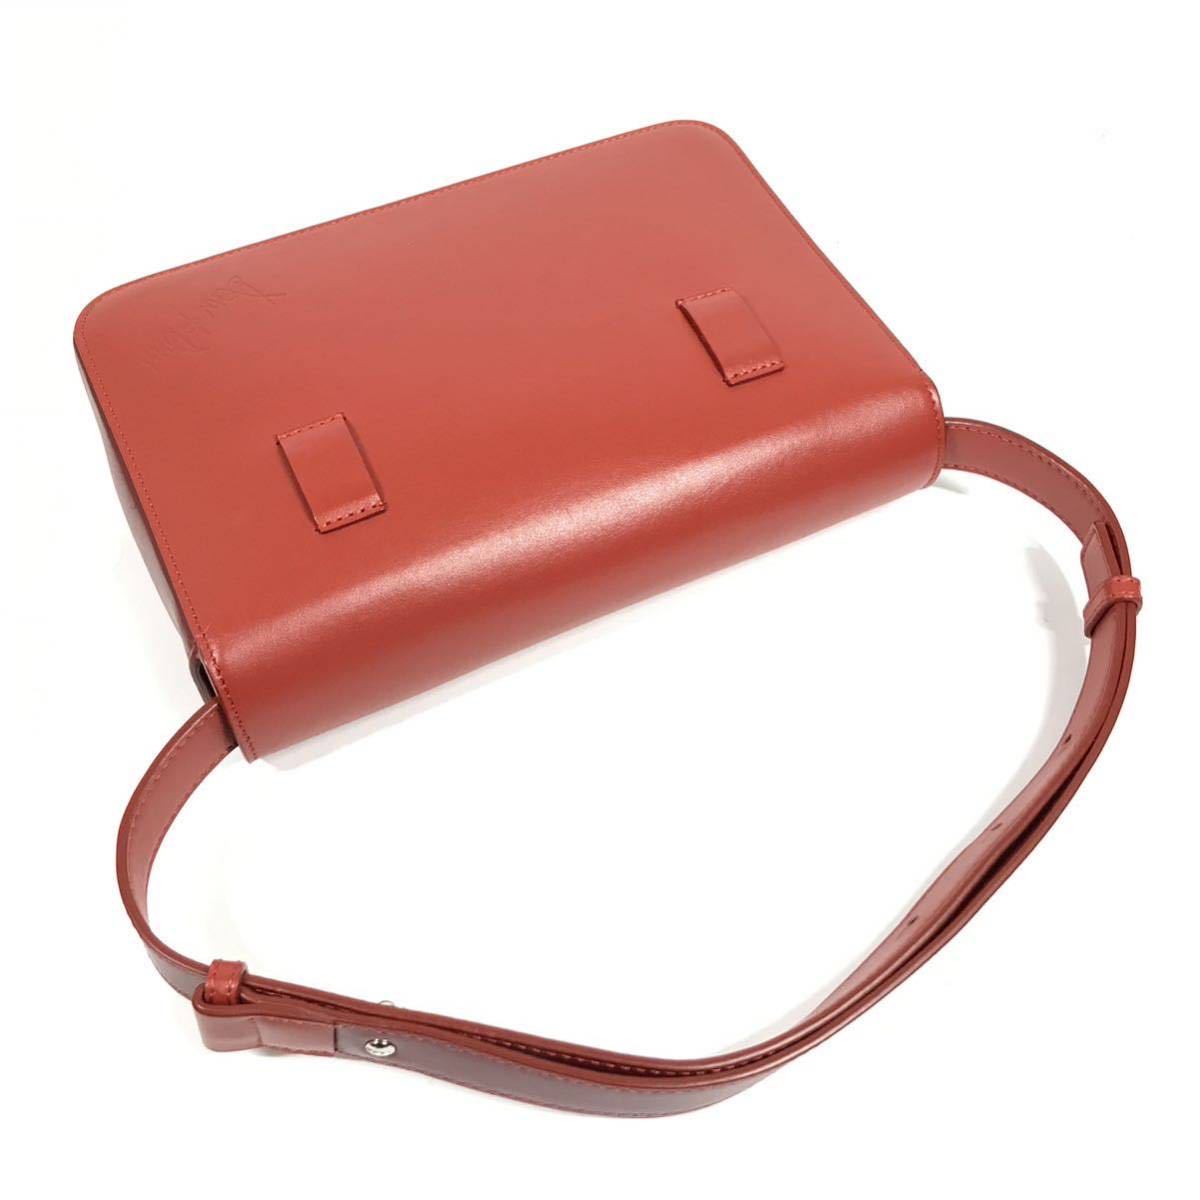 【... квадрат  ...】 настоящий  DSQUARED2  наплечная сумка   красный   лого   металлическая арматура  ... плечо   ...  натуральная кожа   кожа   для женщин    женский   Италия  пр-во  